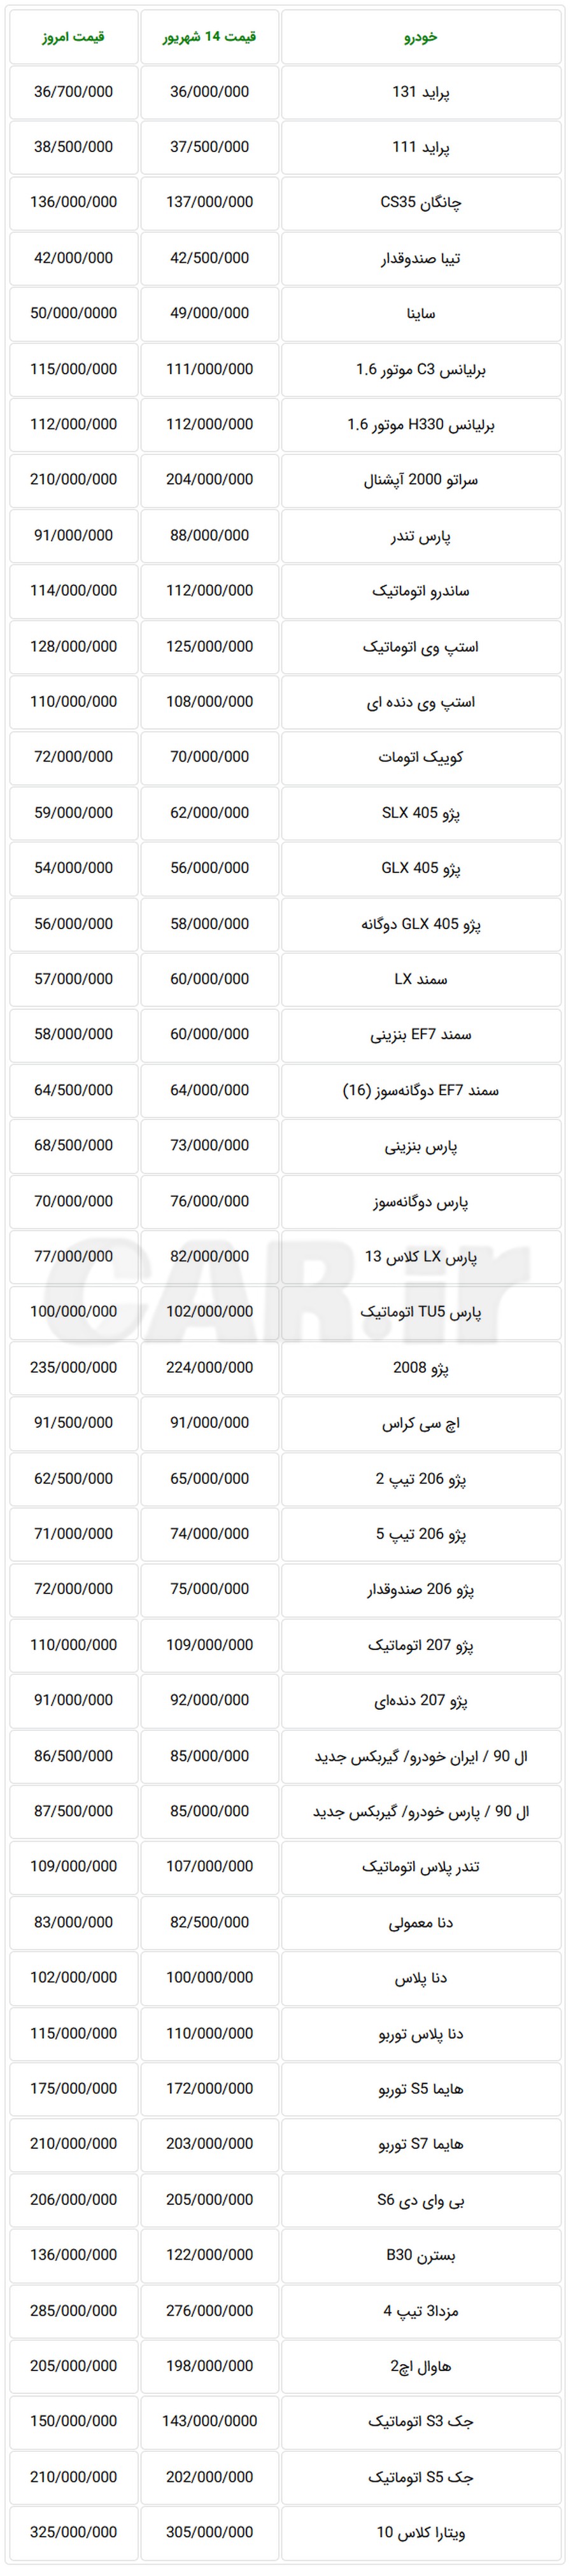 قیمت جدید خودروهای تولید داخل در بازار تهران امروز شنبه
